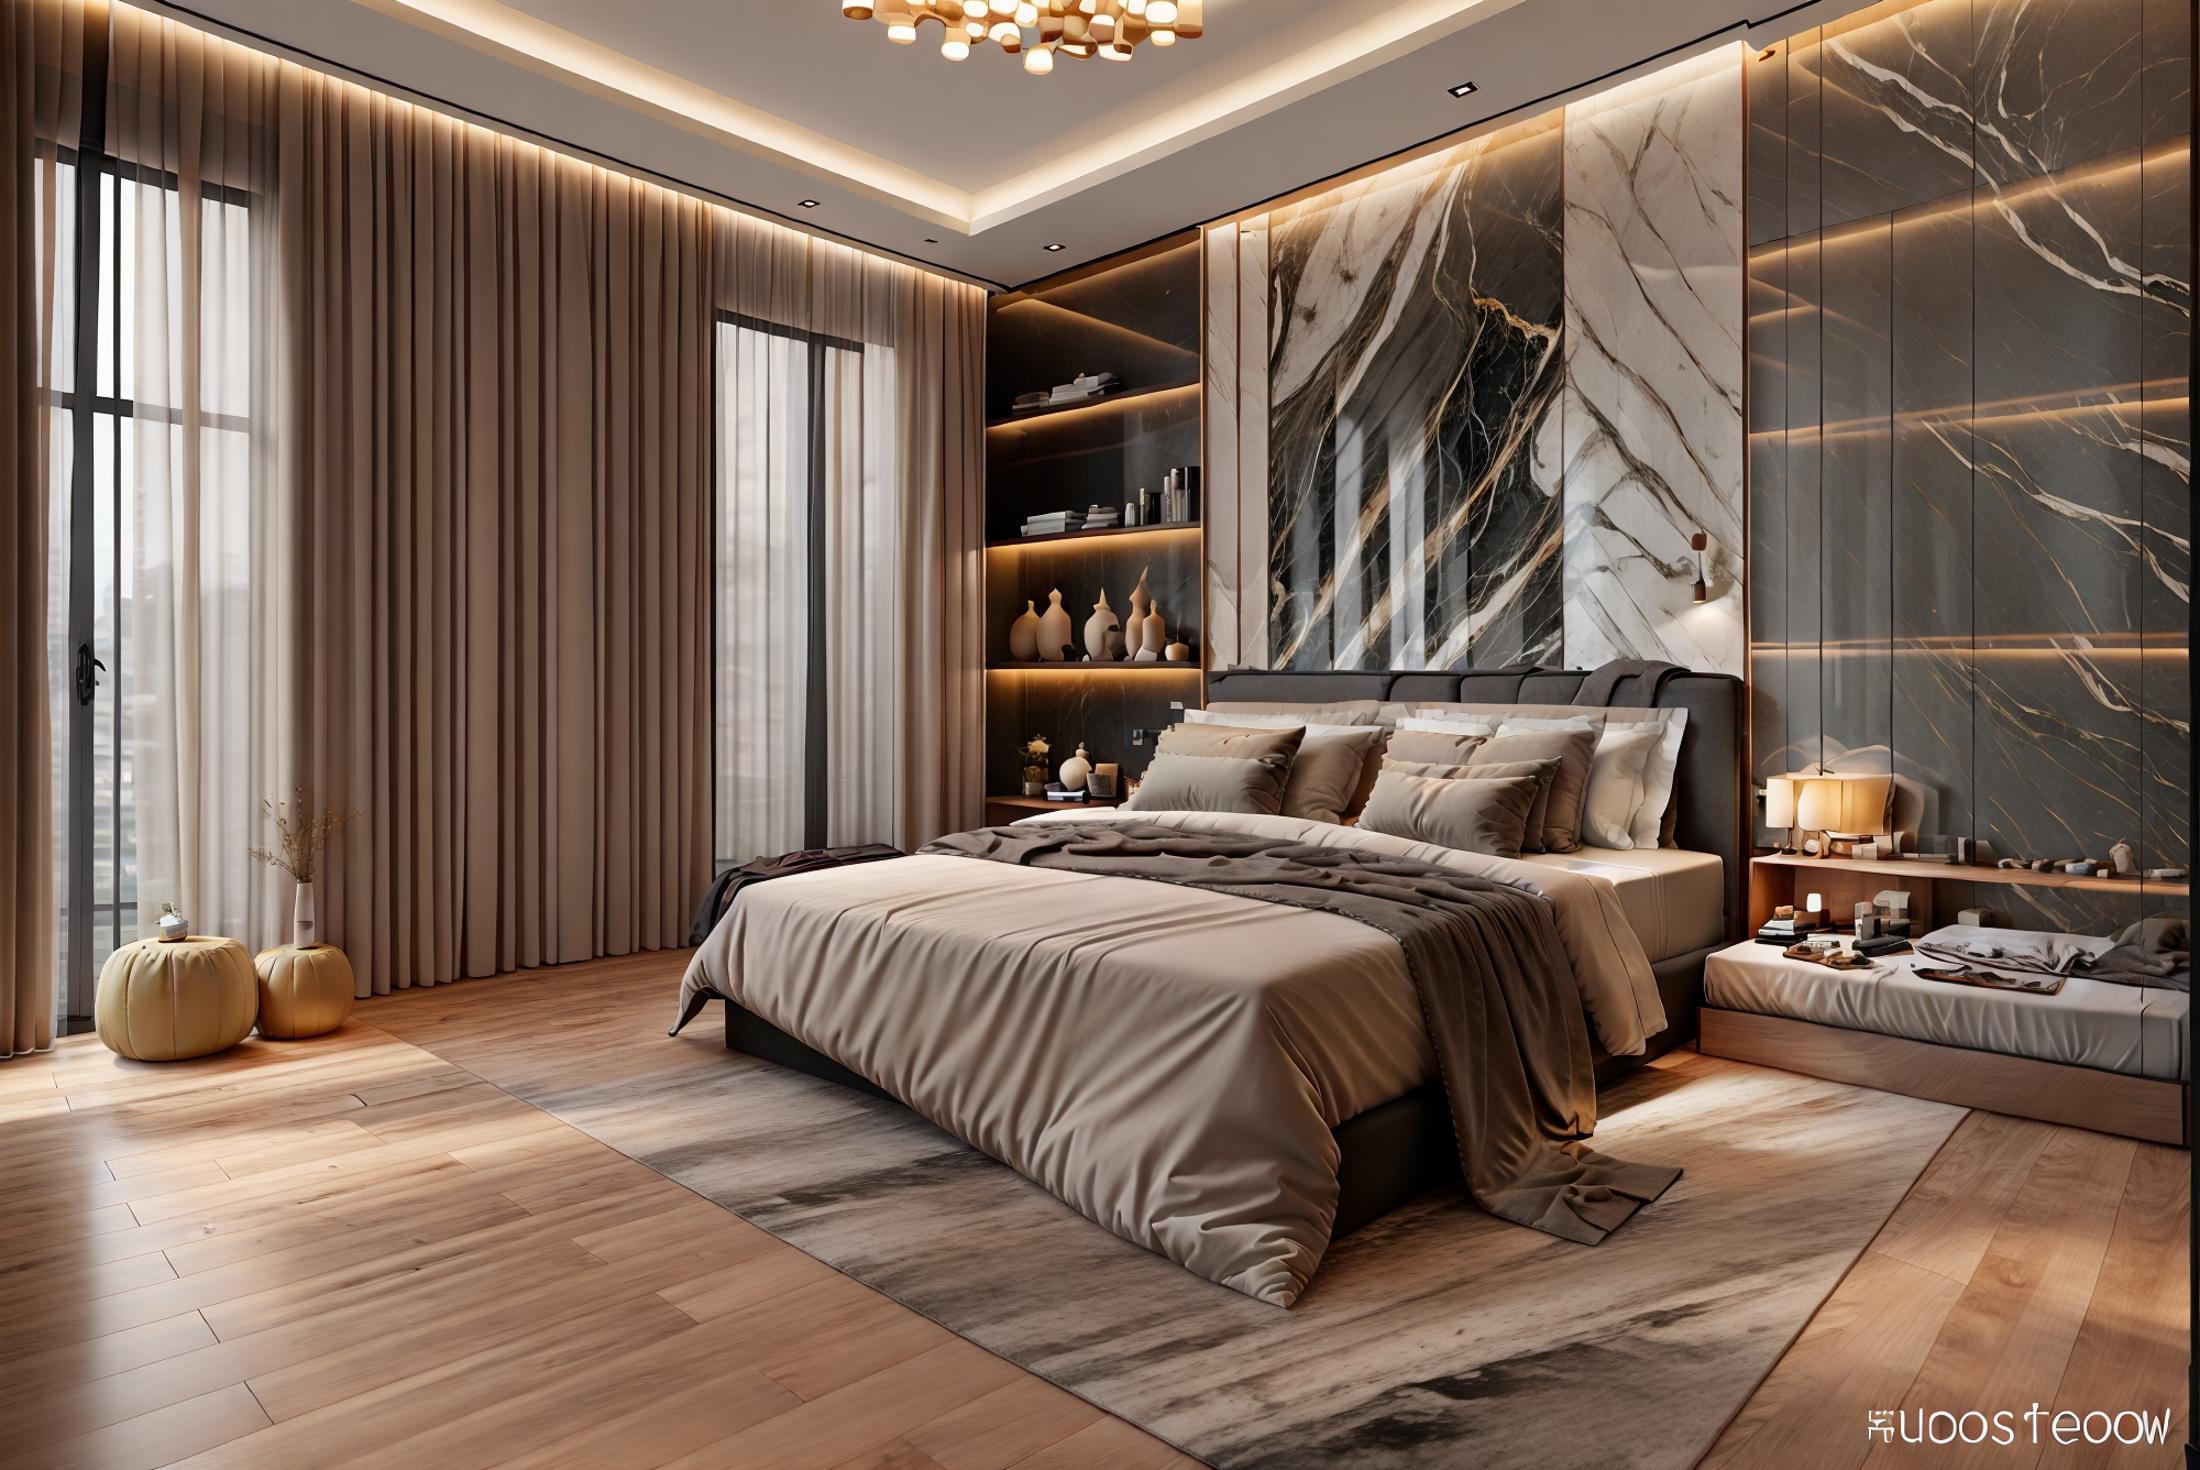 Modern luxury bedroom image by Hakhoa0901